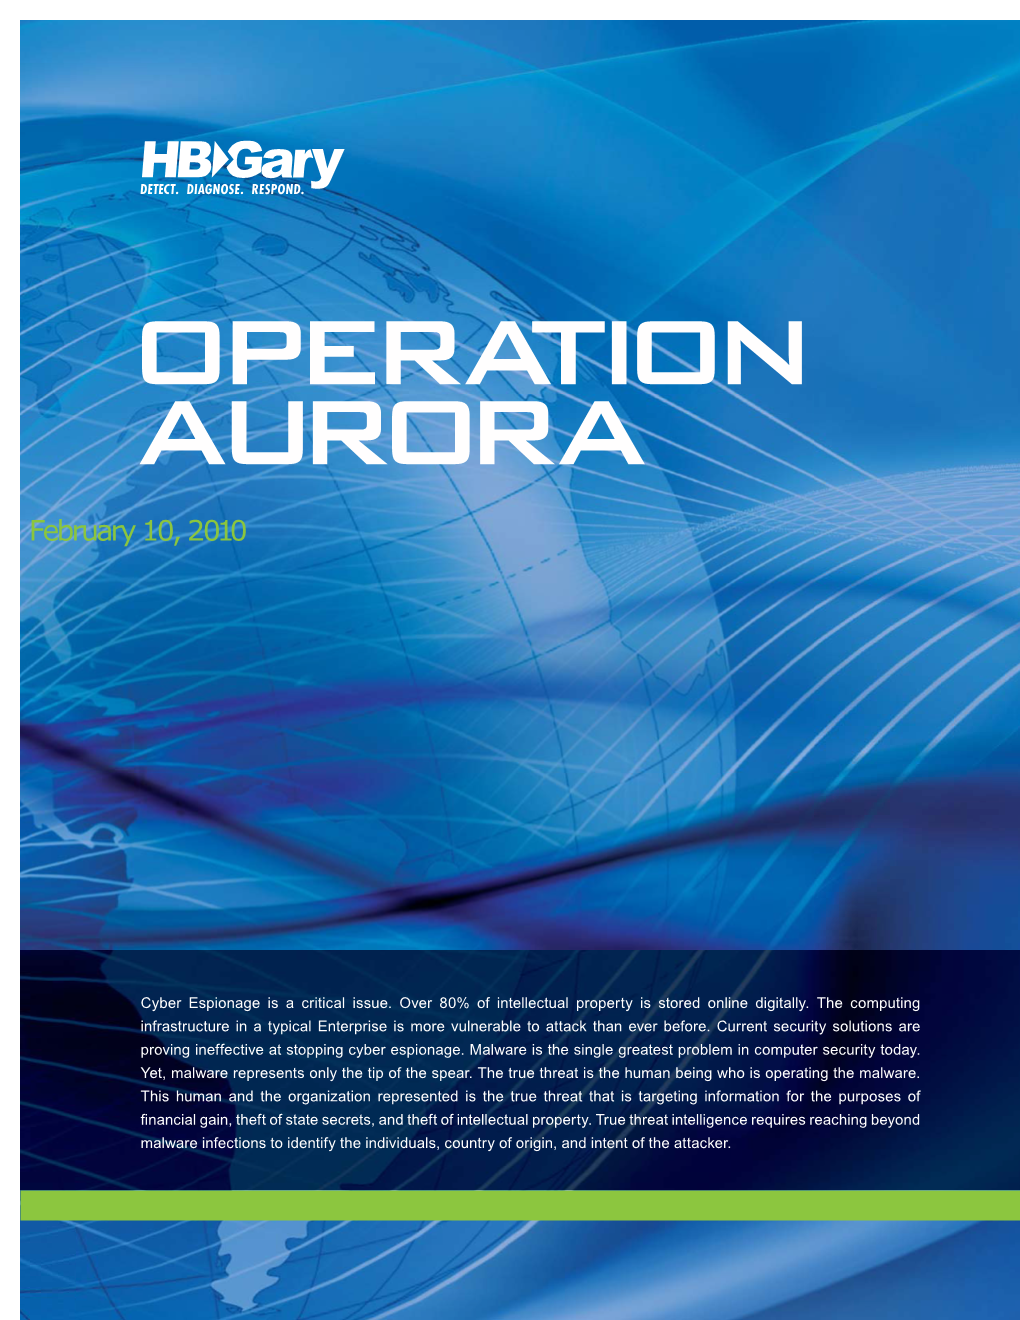 Whitepaper Hbgary Threat Report, Operation Auro